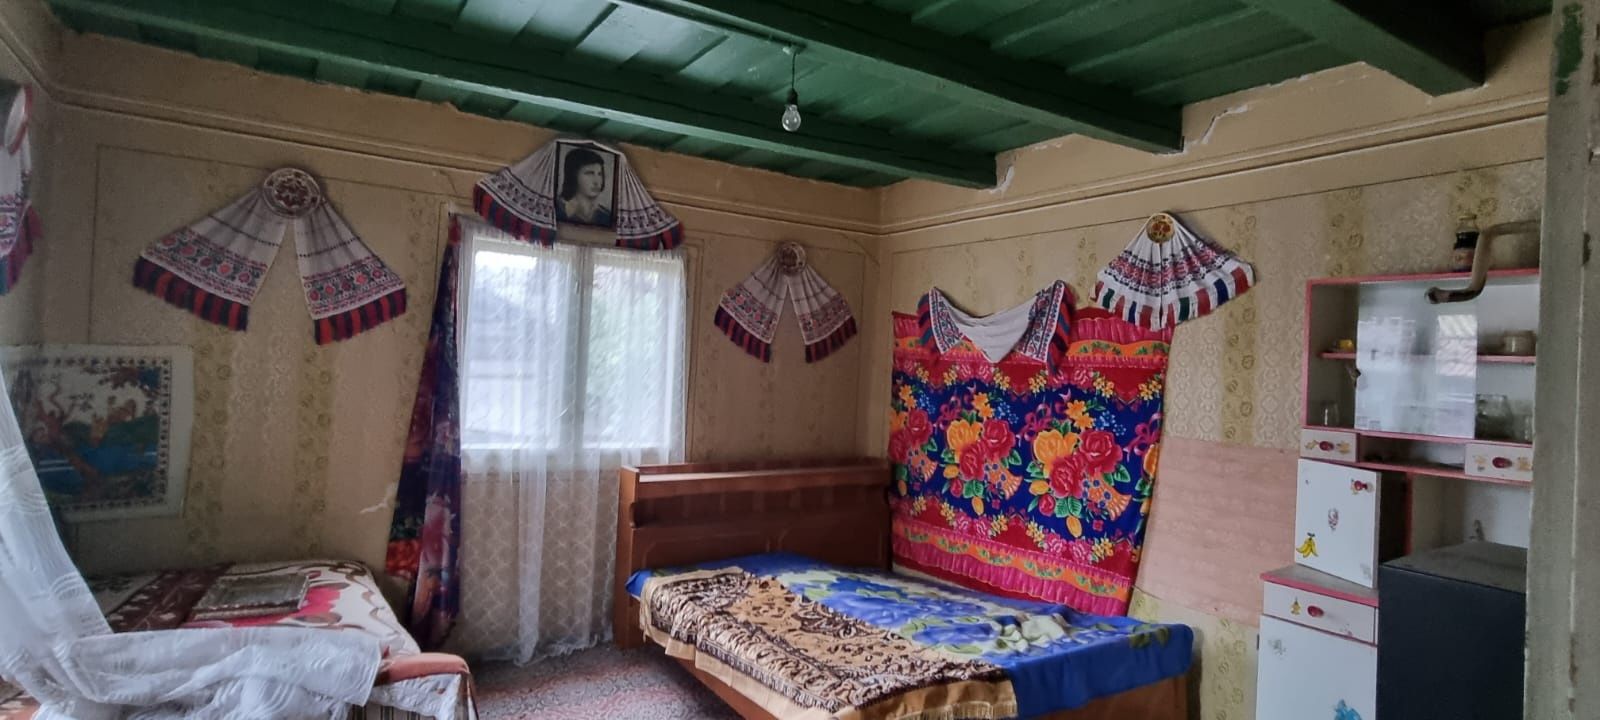 Casa de vinzare in satul Hidis com Pomezeu jud Bihor